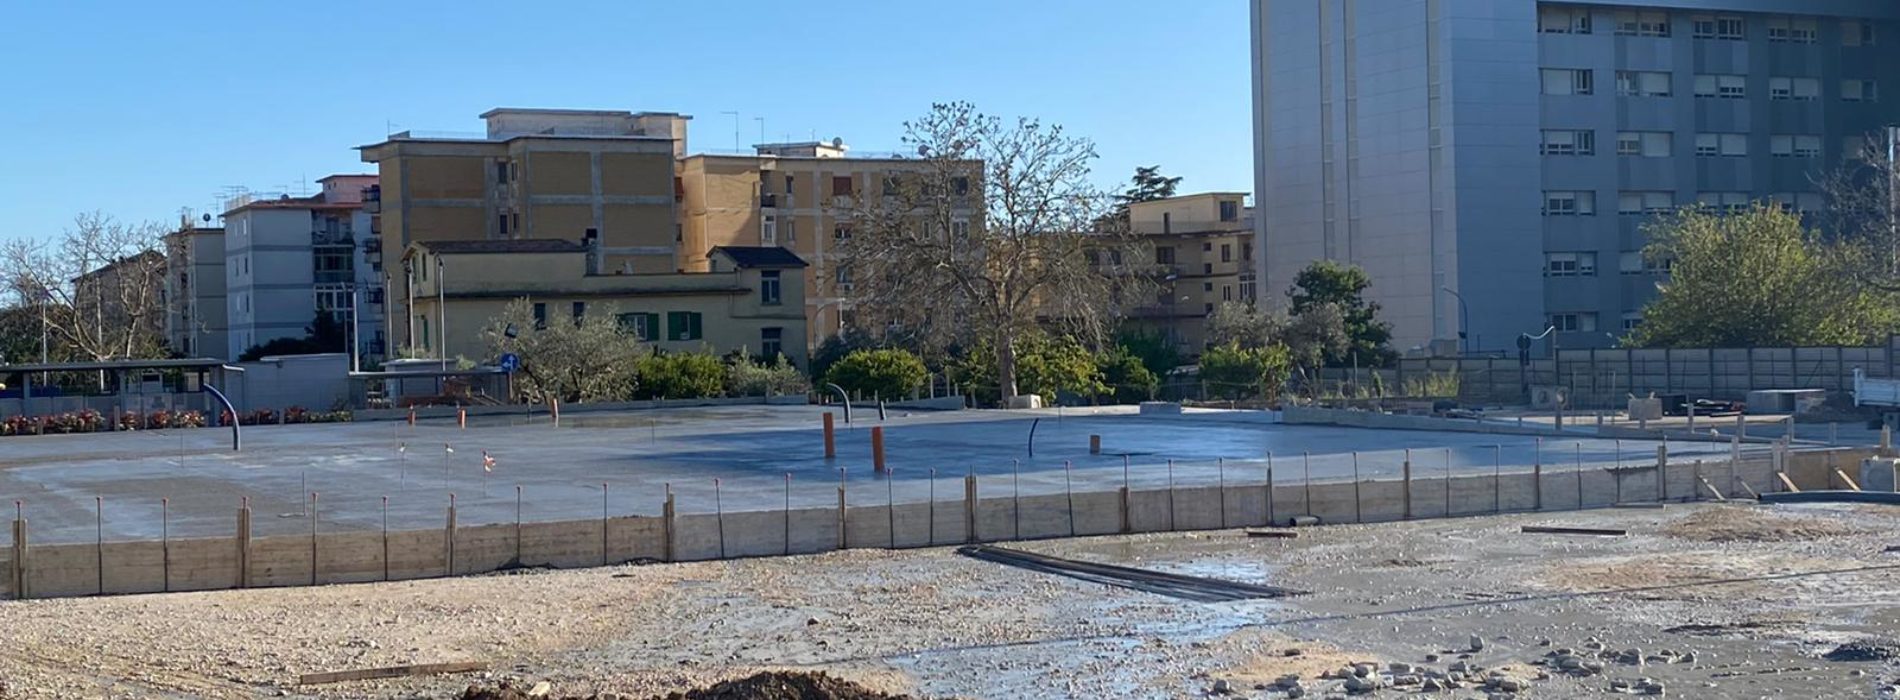 Aorn Caserta, pronta l’area che accoglierà l’ospedale modulare